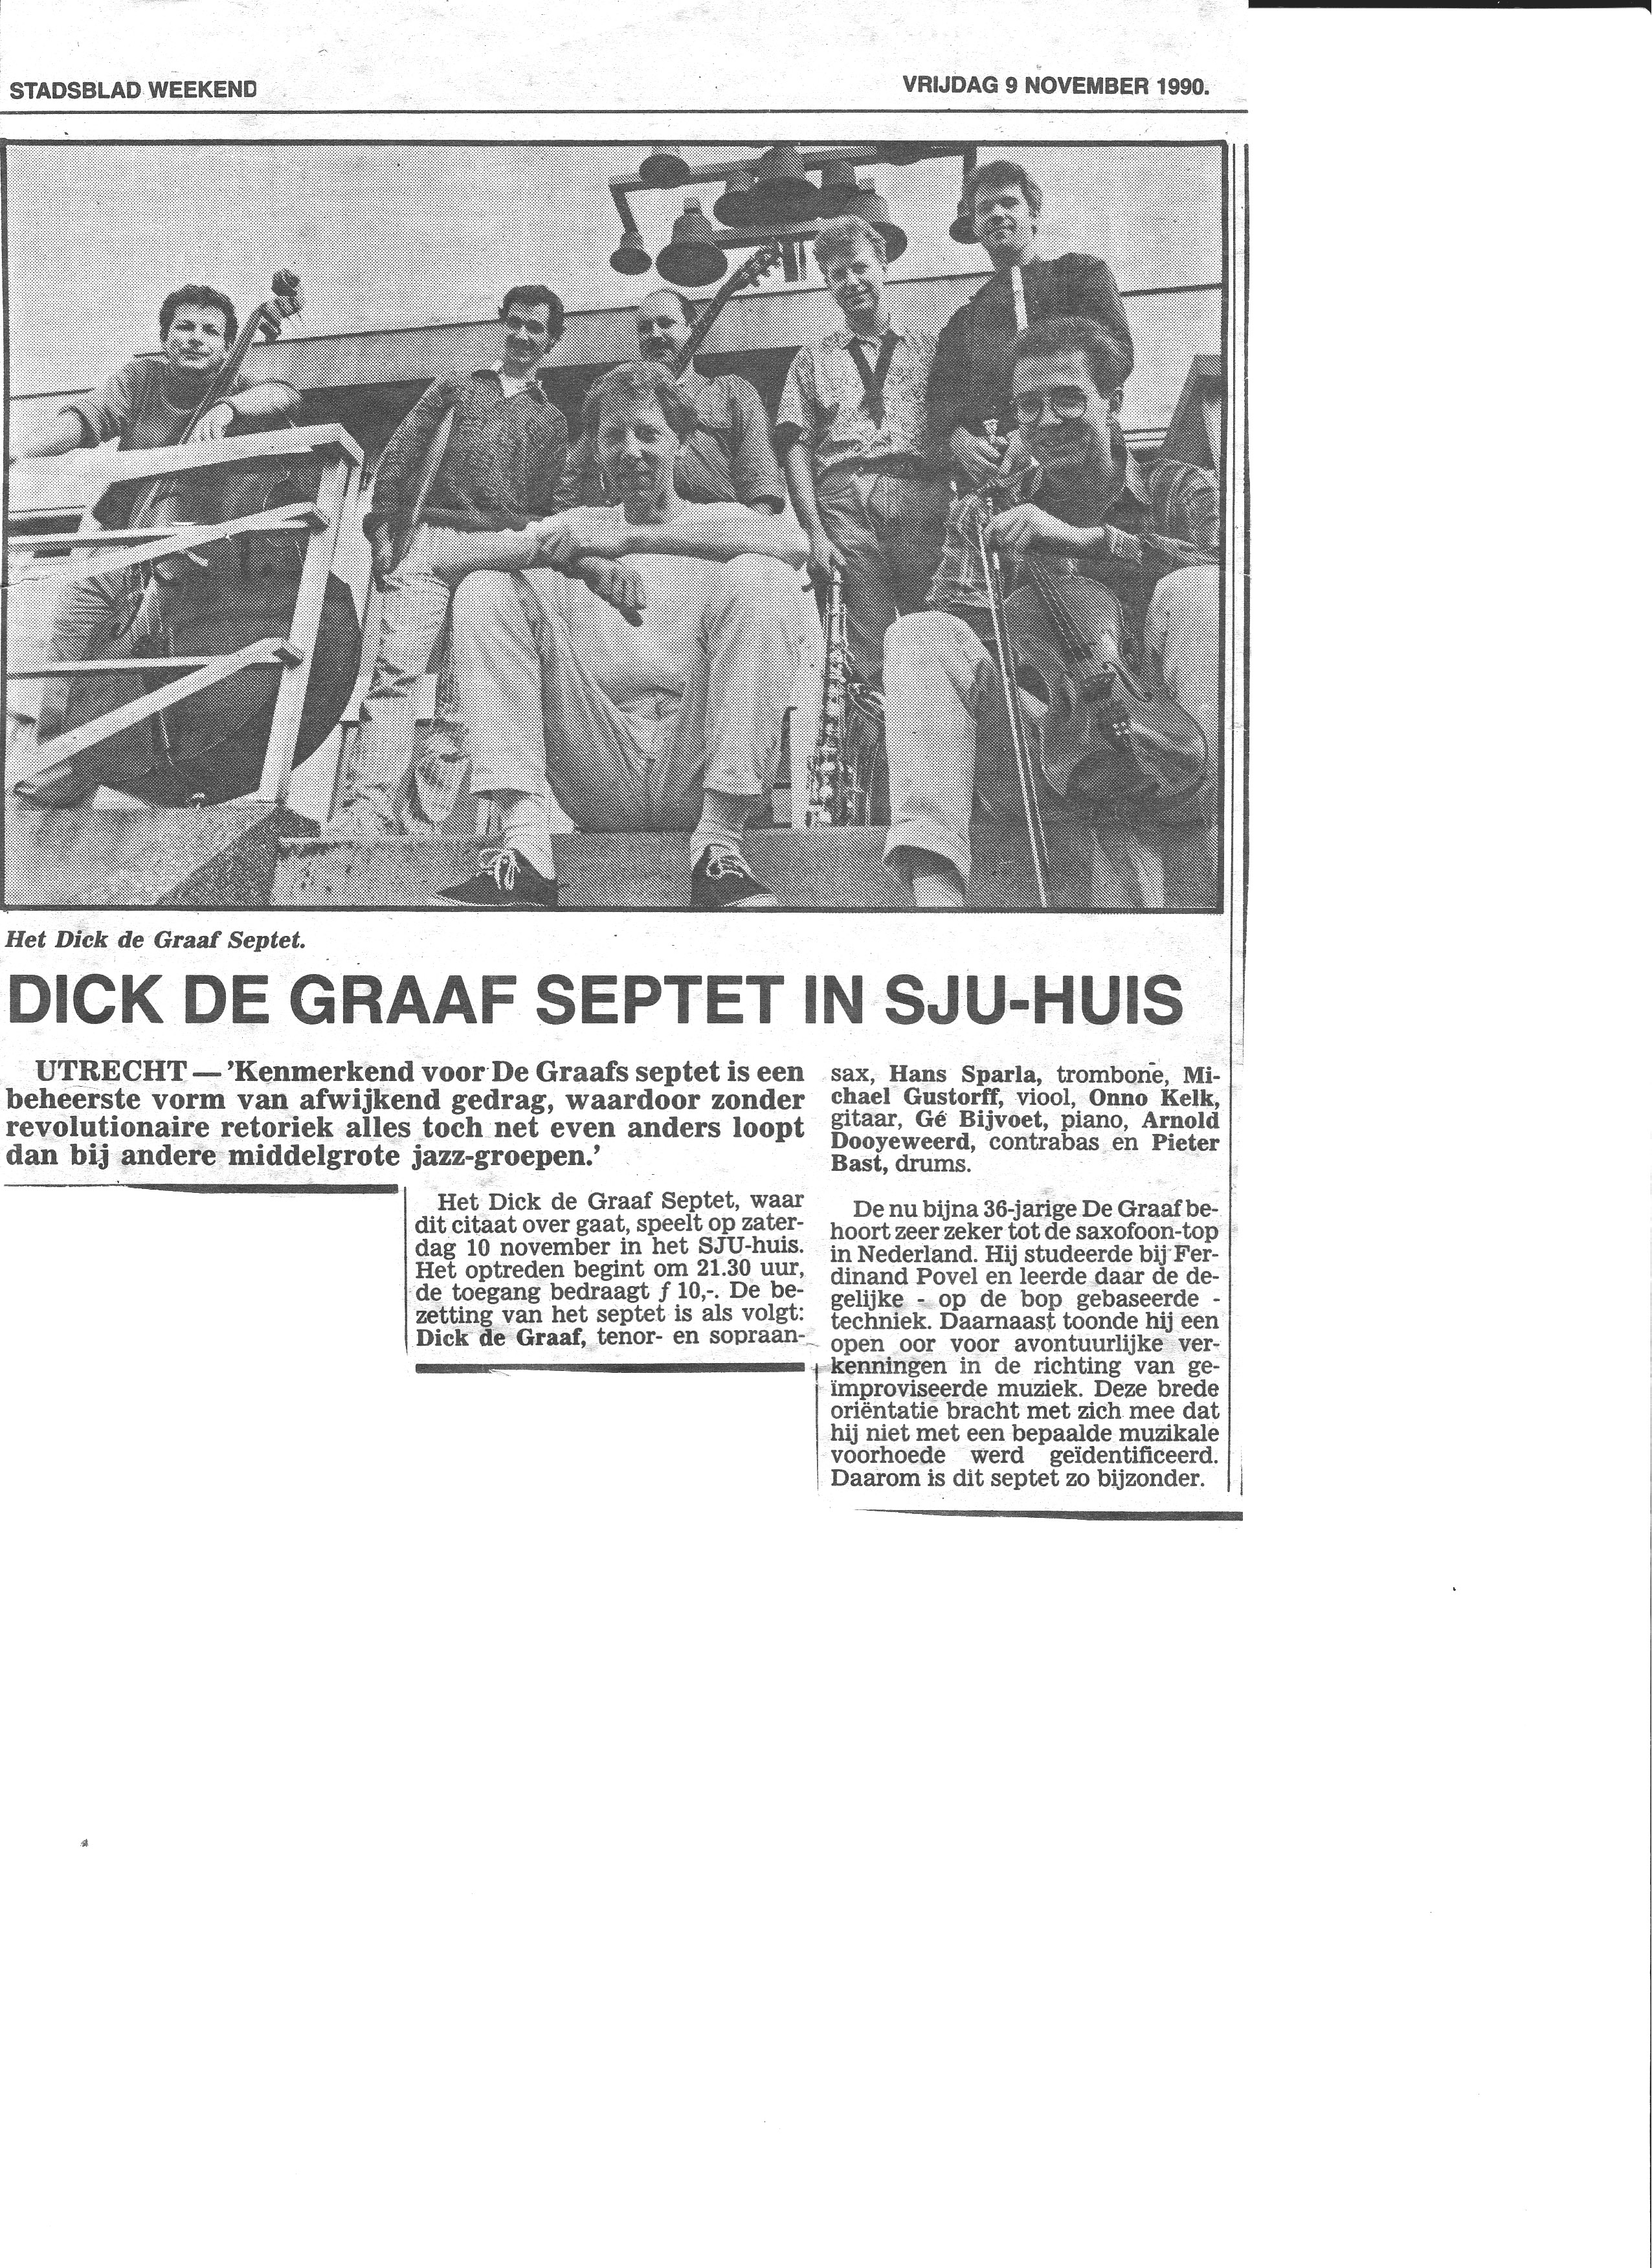 Dick de Graaf Septet SJU-HUIS